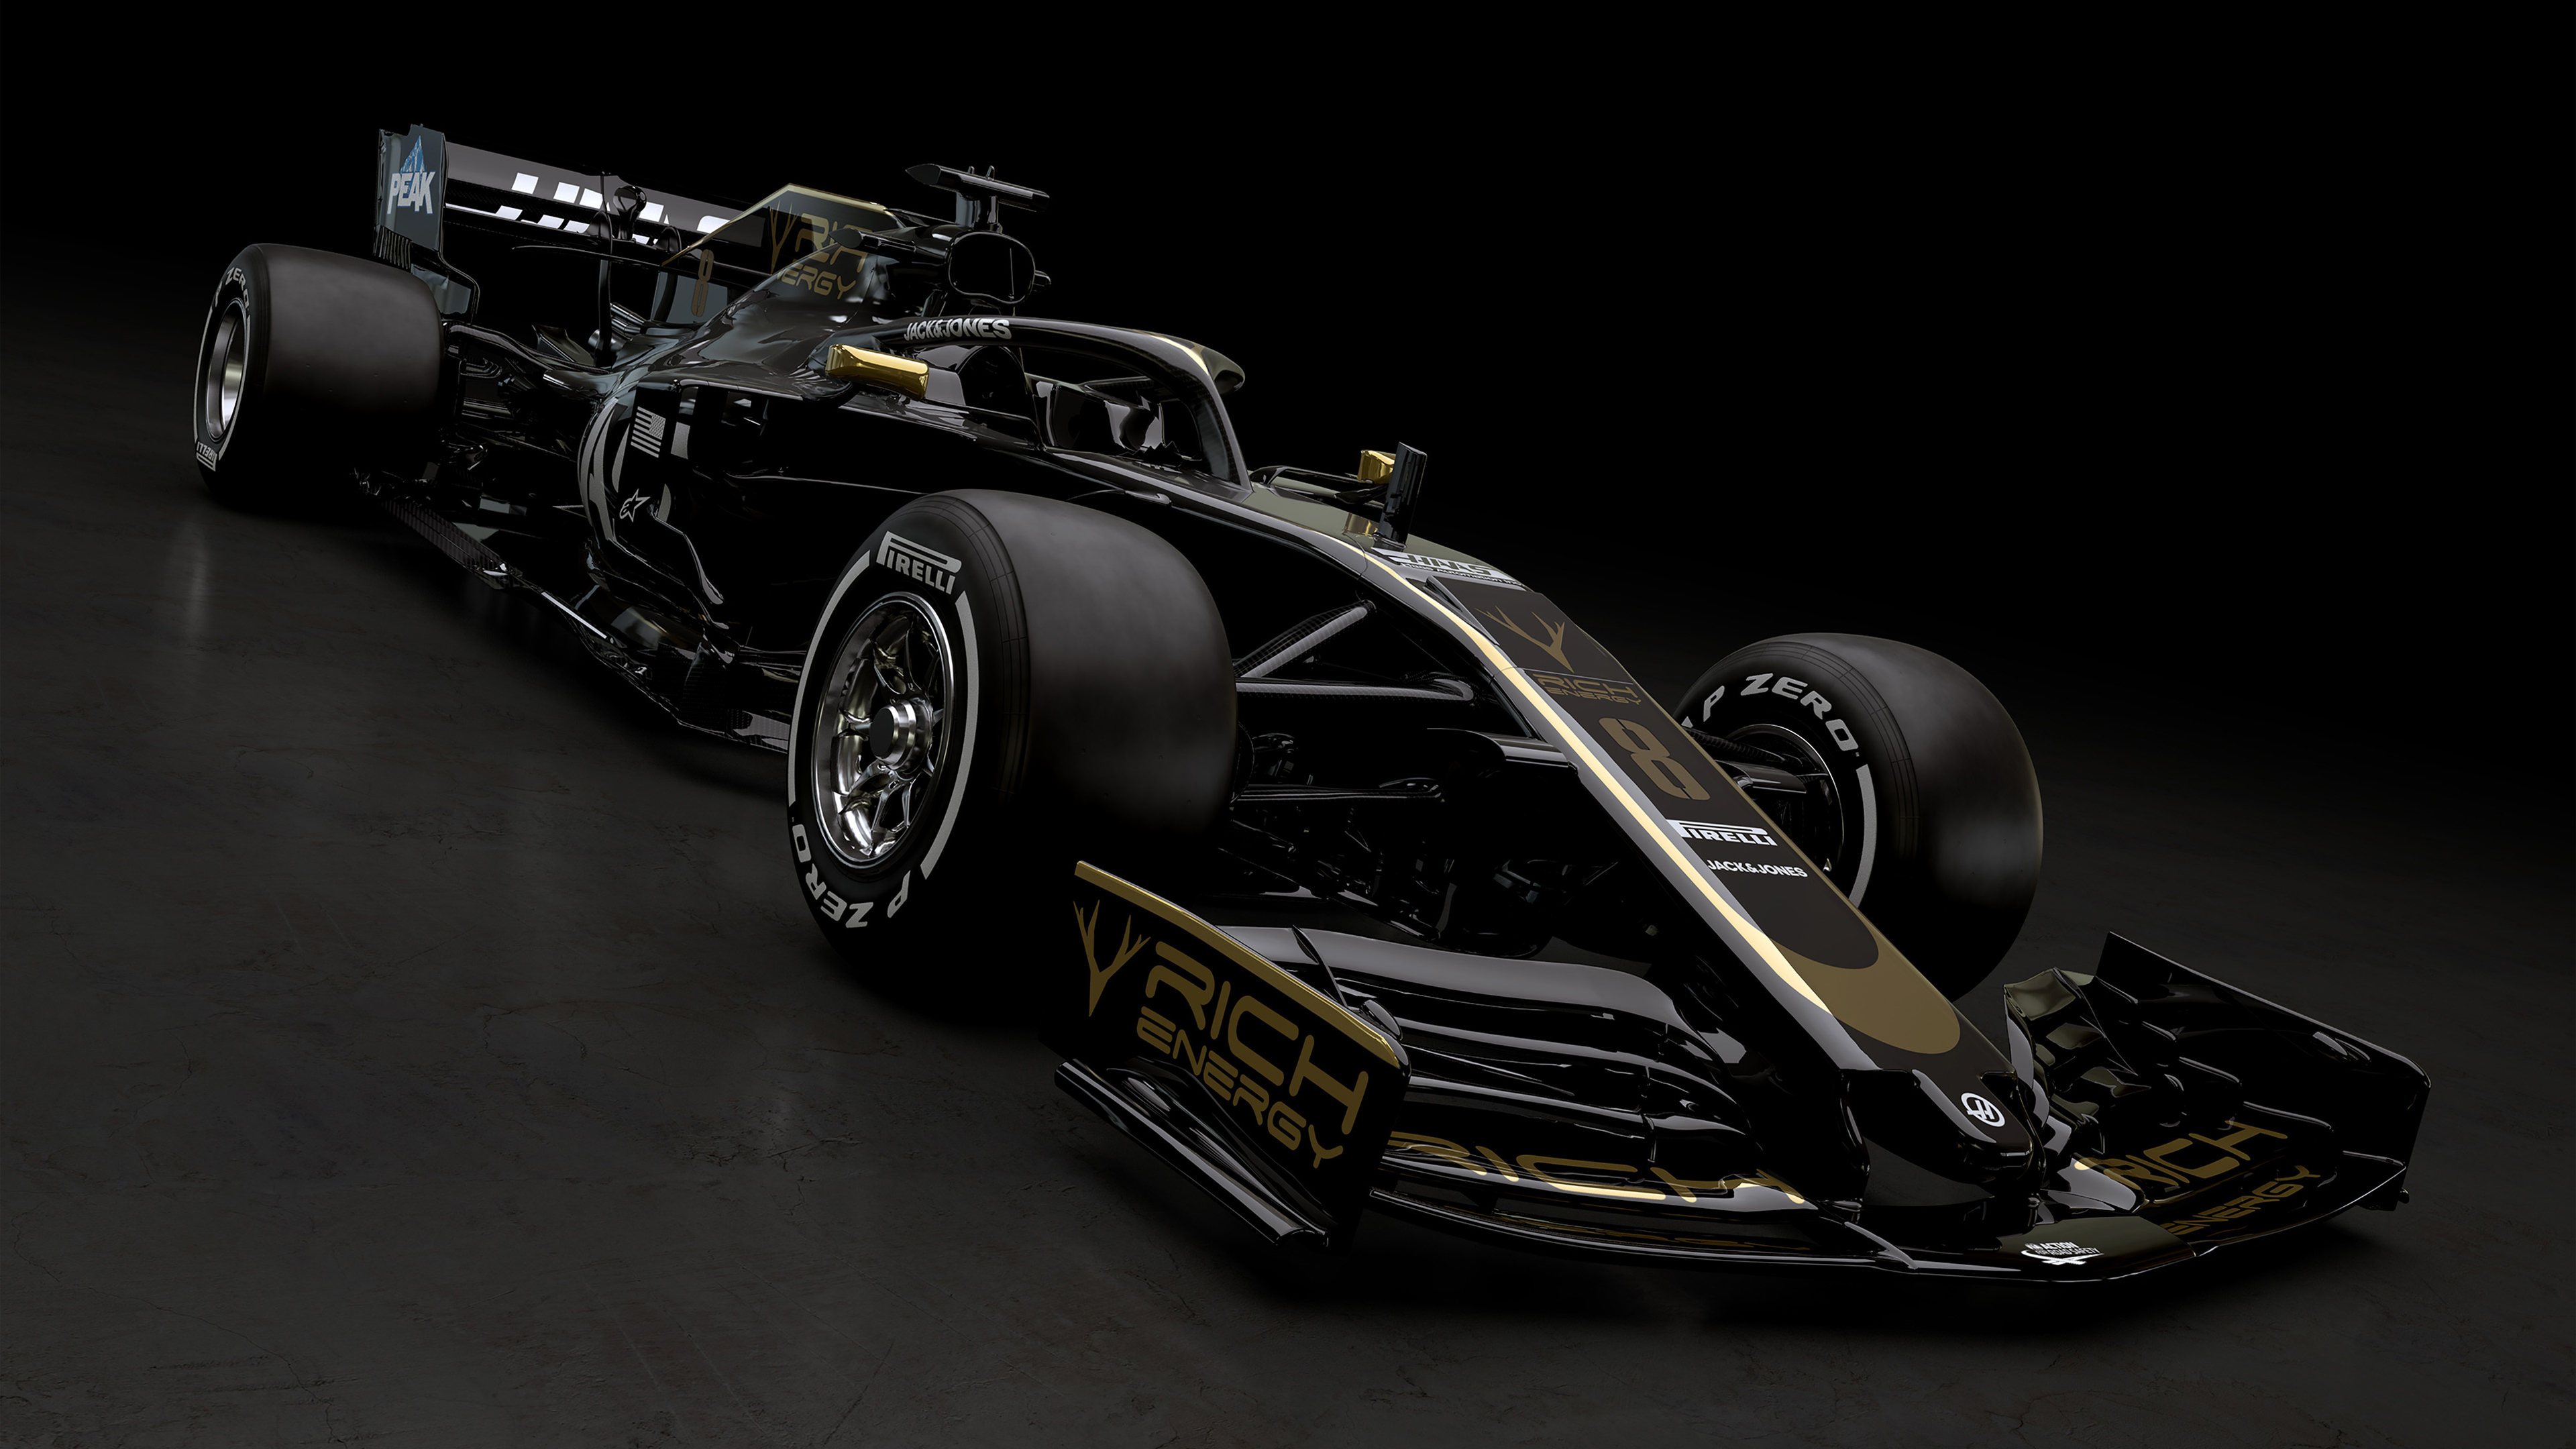 Haas VF-19 2019 F1 Car 4K